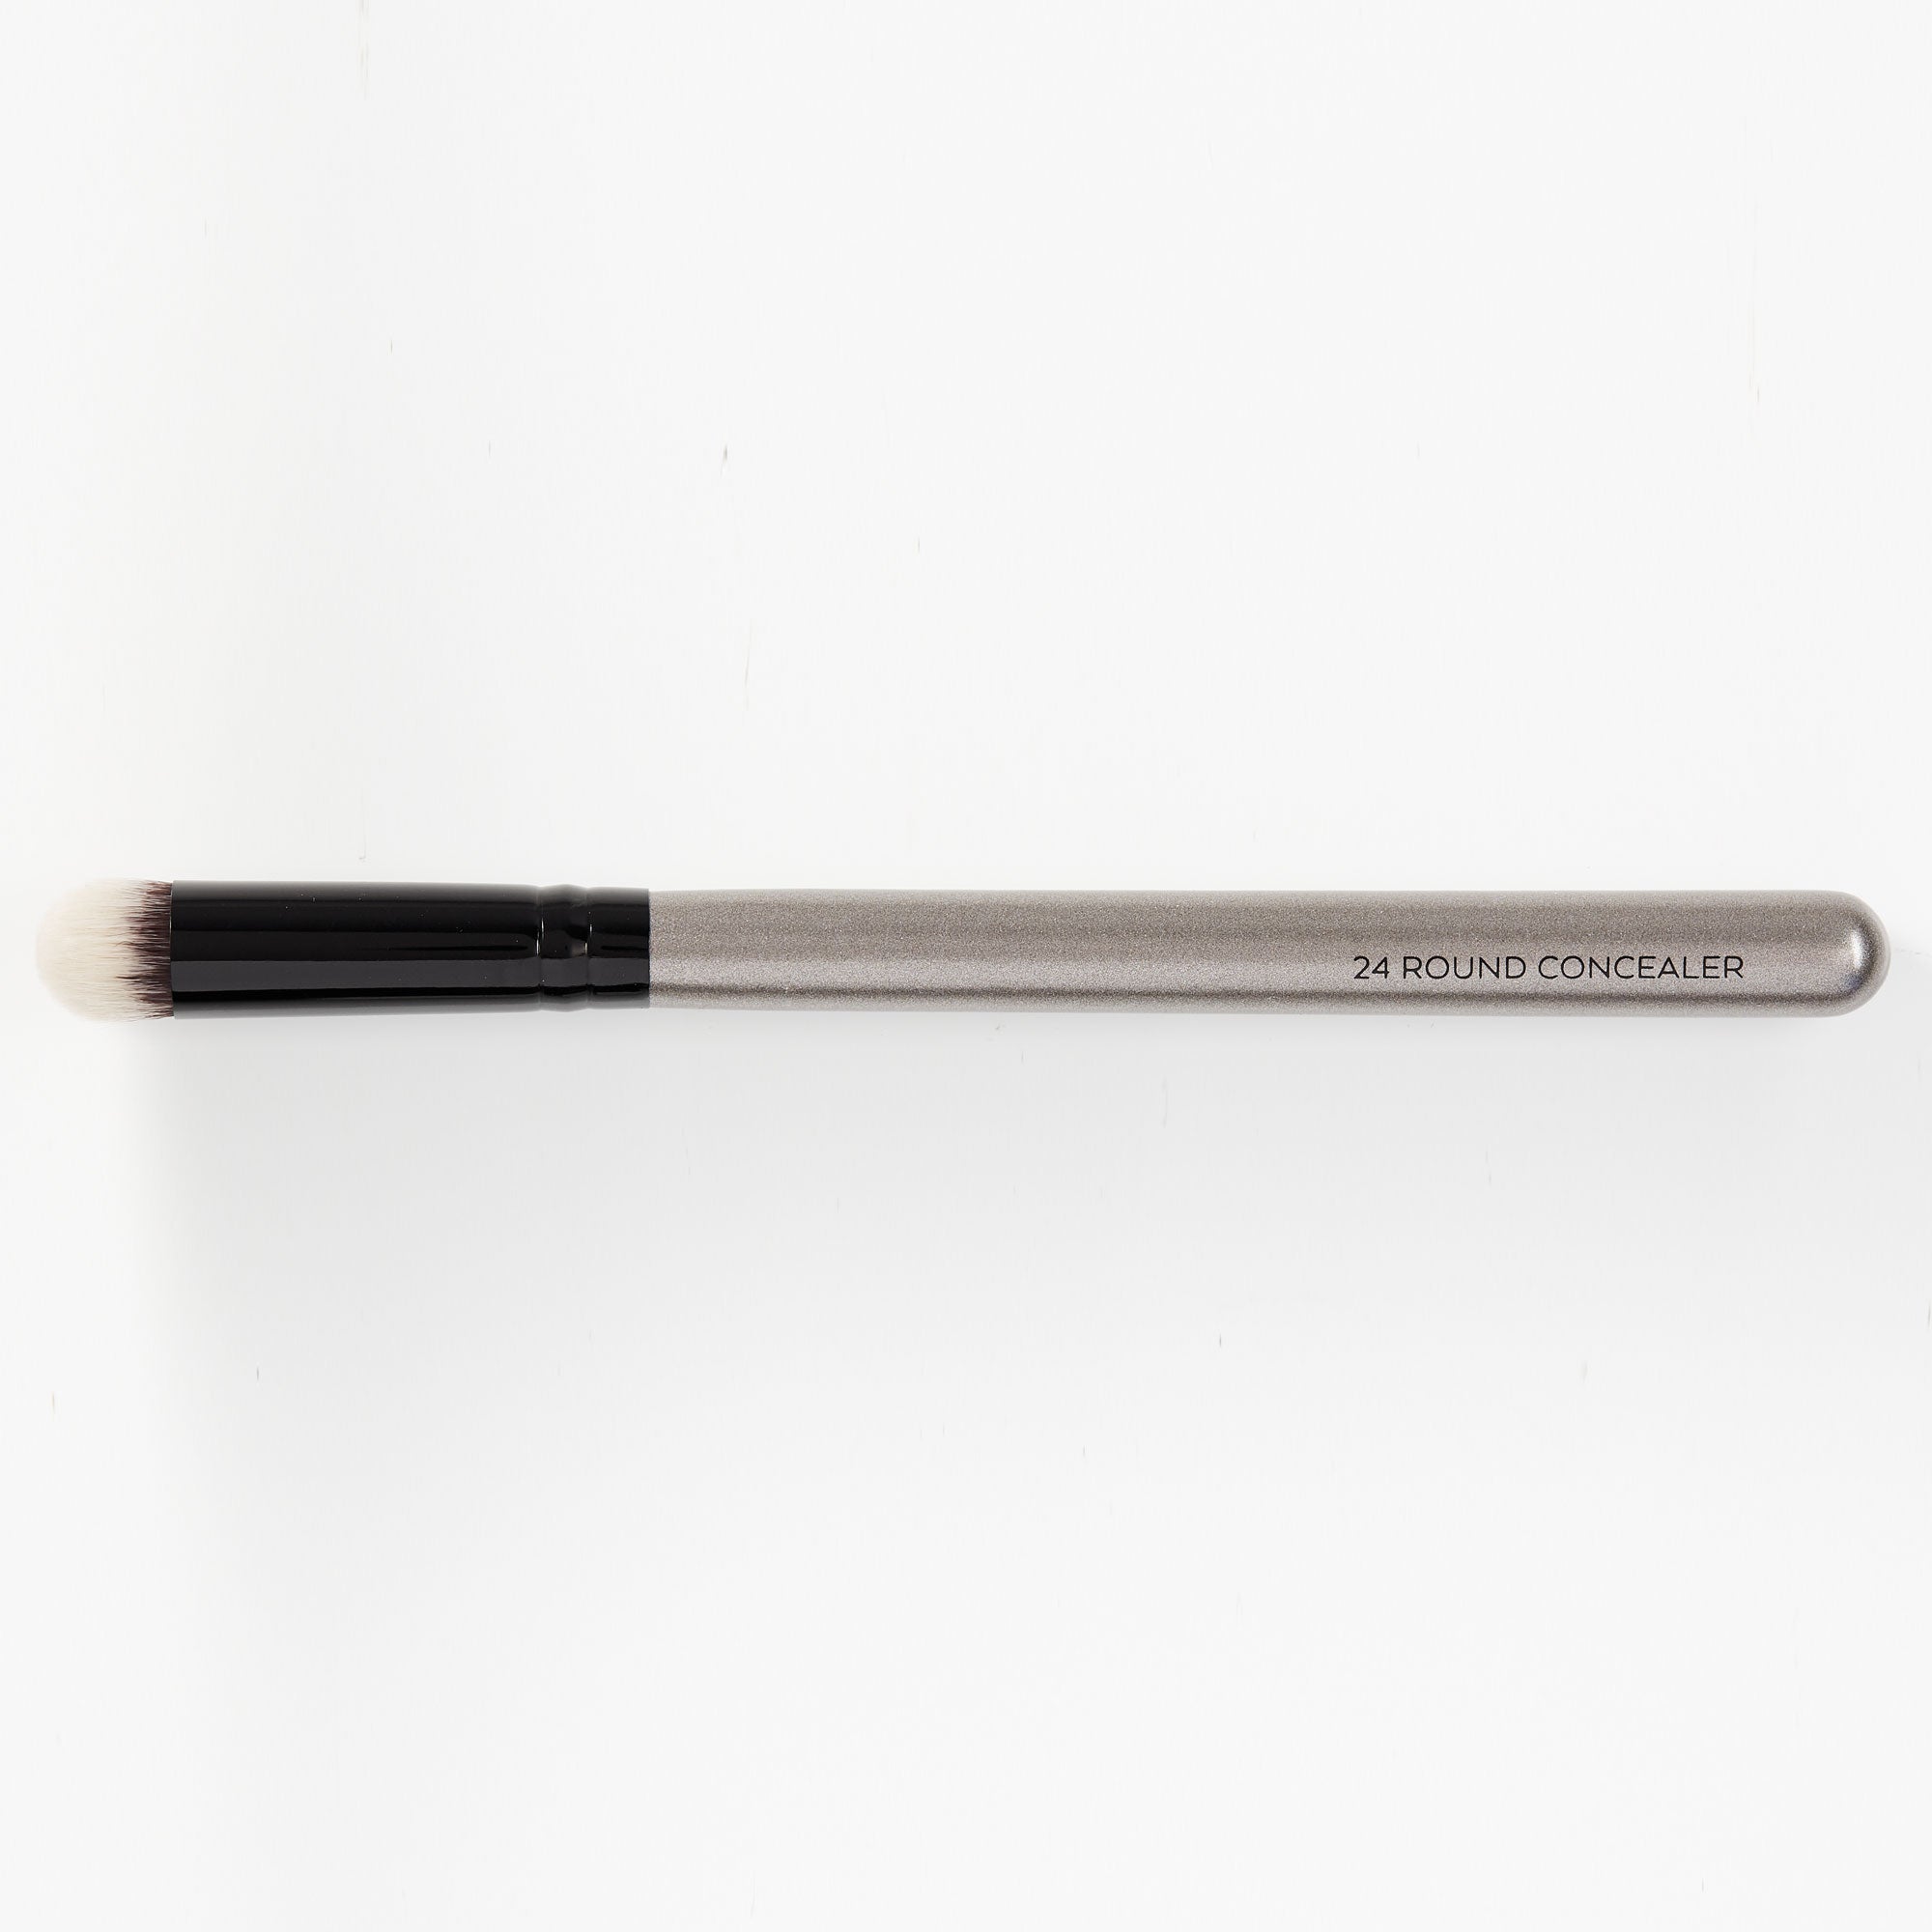 Round Concealer Brush - HeyBabe Cosmetics